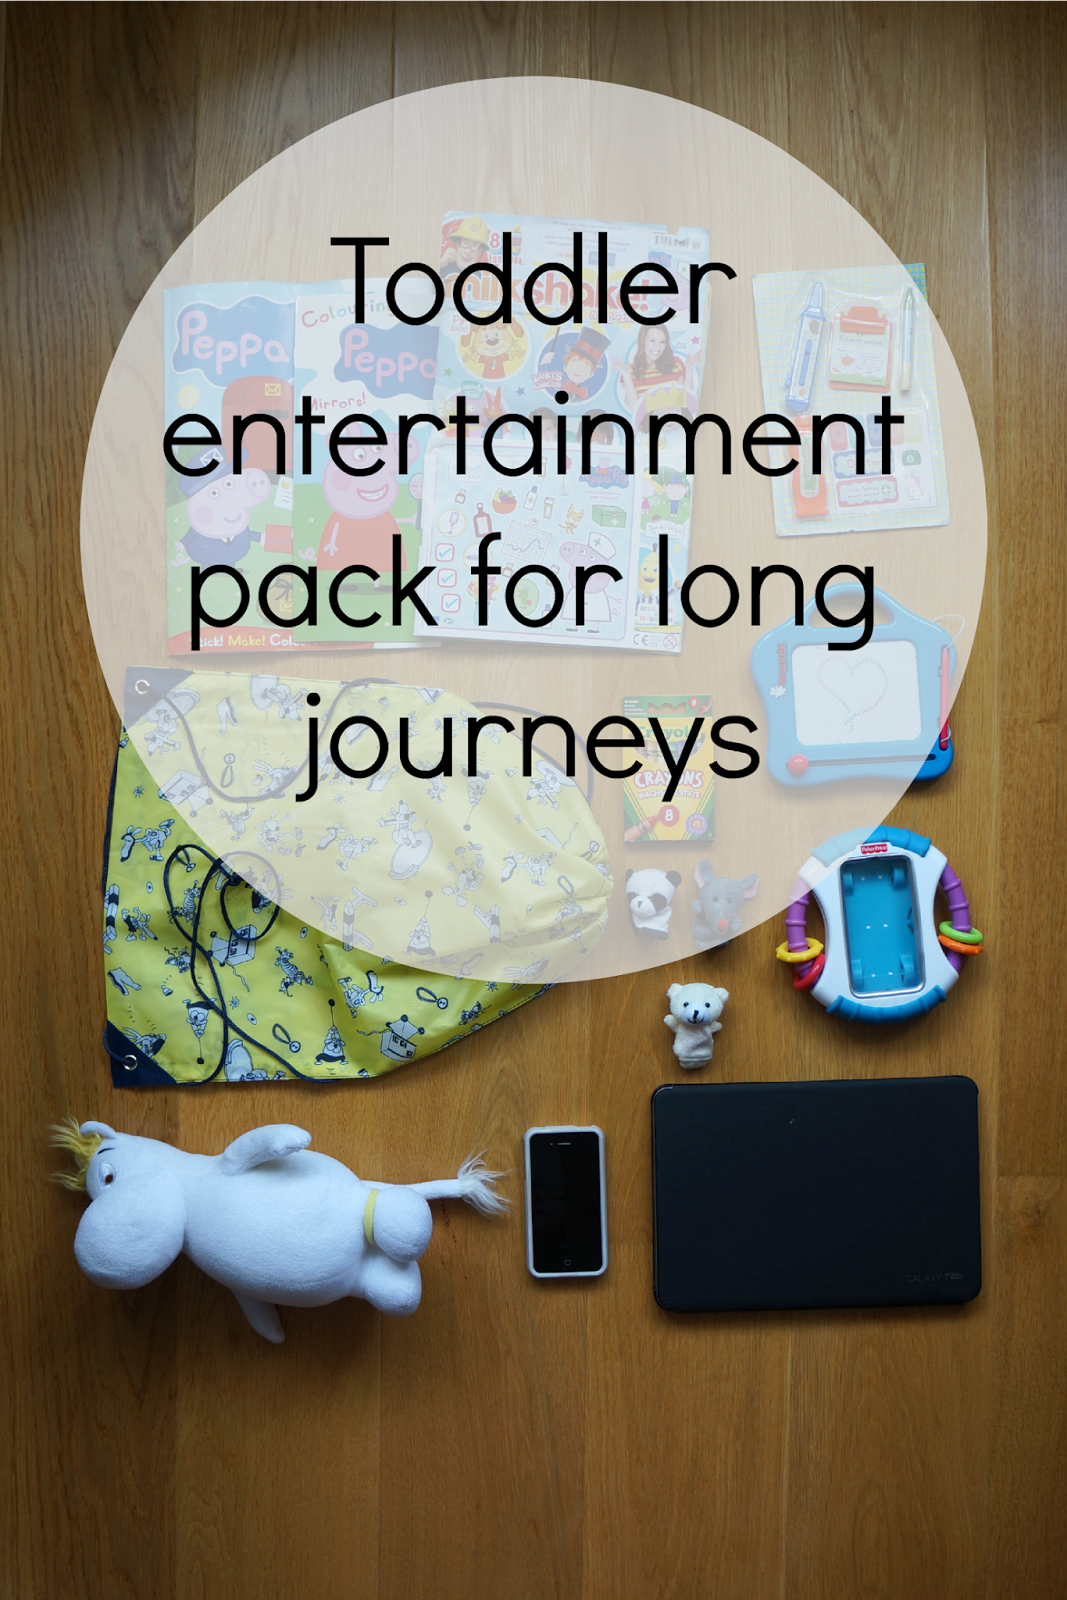 10 ideas for toddler entertainment pack for flying travel long journeys